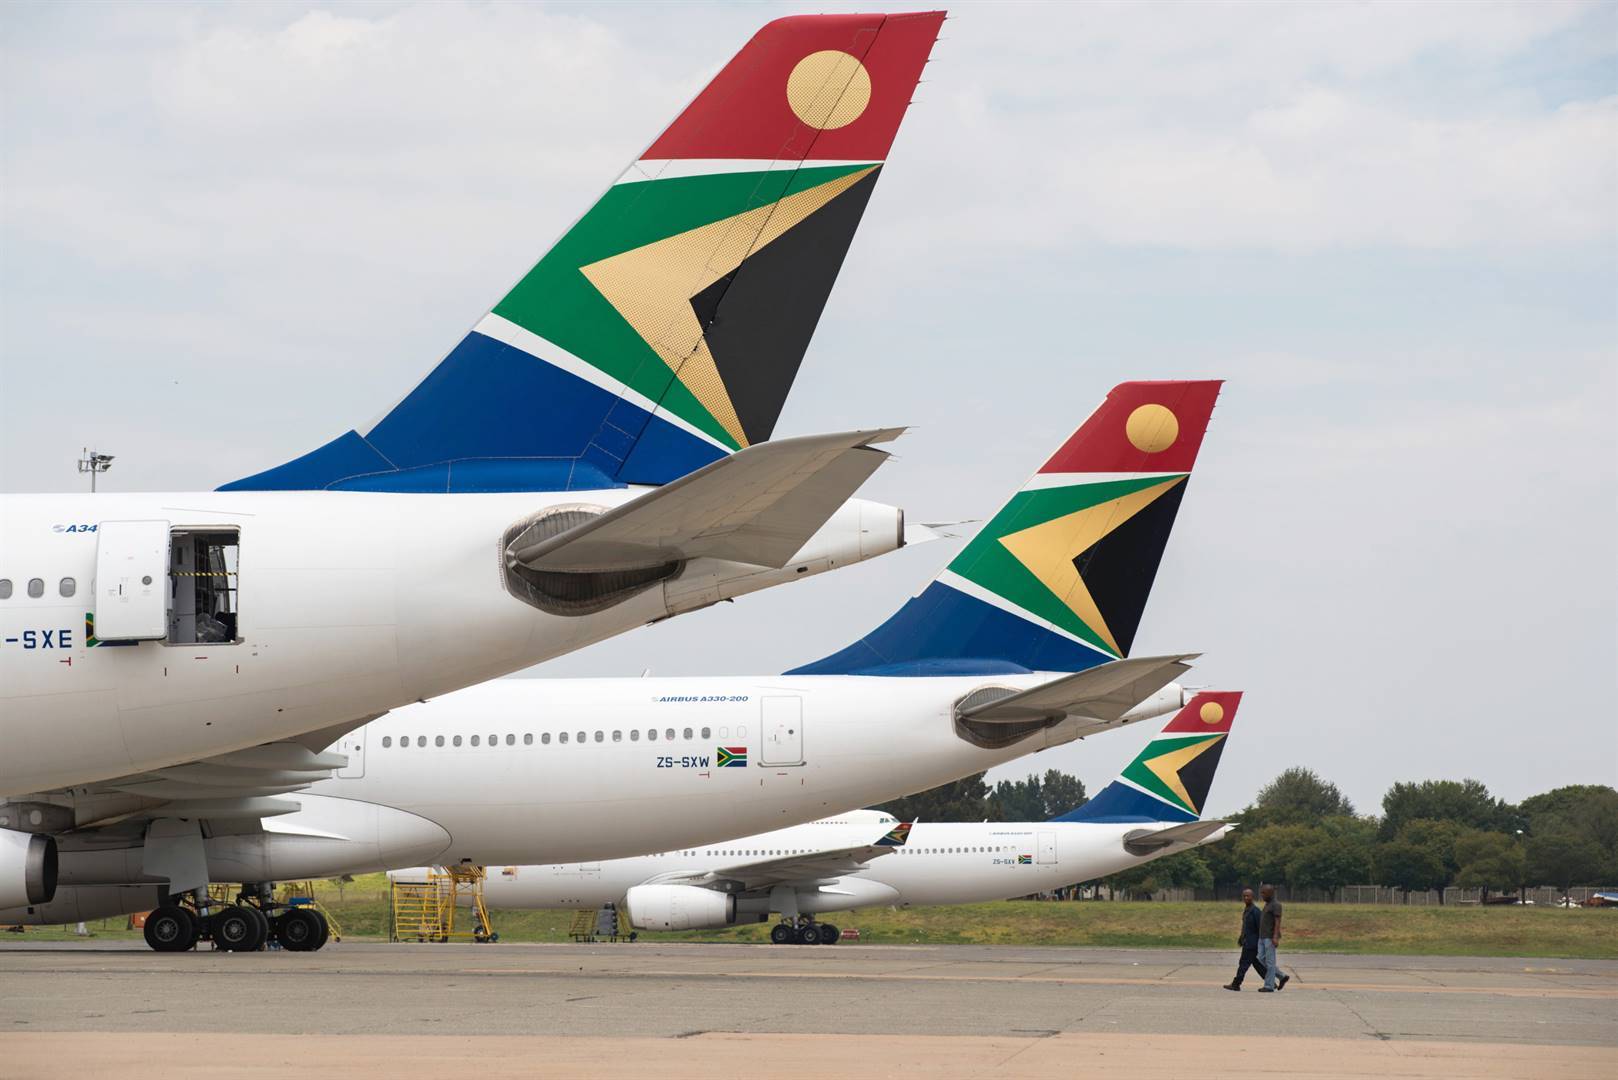 Foto ter illustrasie: Vliegtuie van die Suid-Afrikaanse Lugdiens (SAL) staan langs mekaar op ’n vliegveld.  Foto: Bloomberg